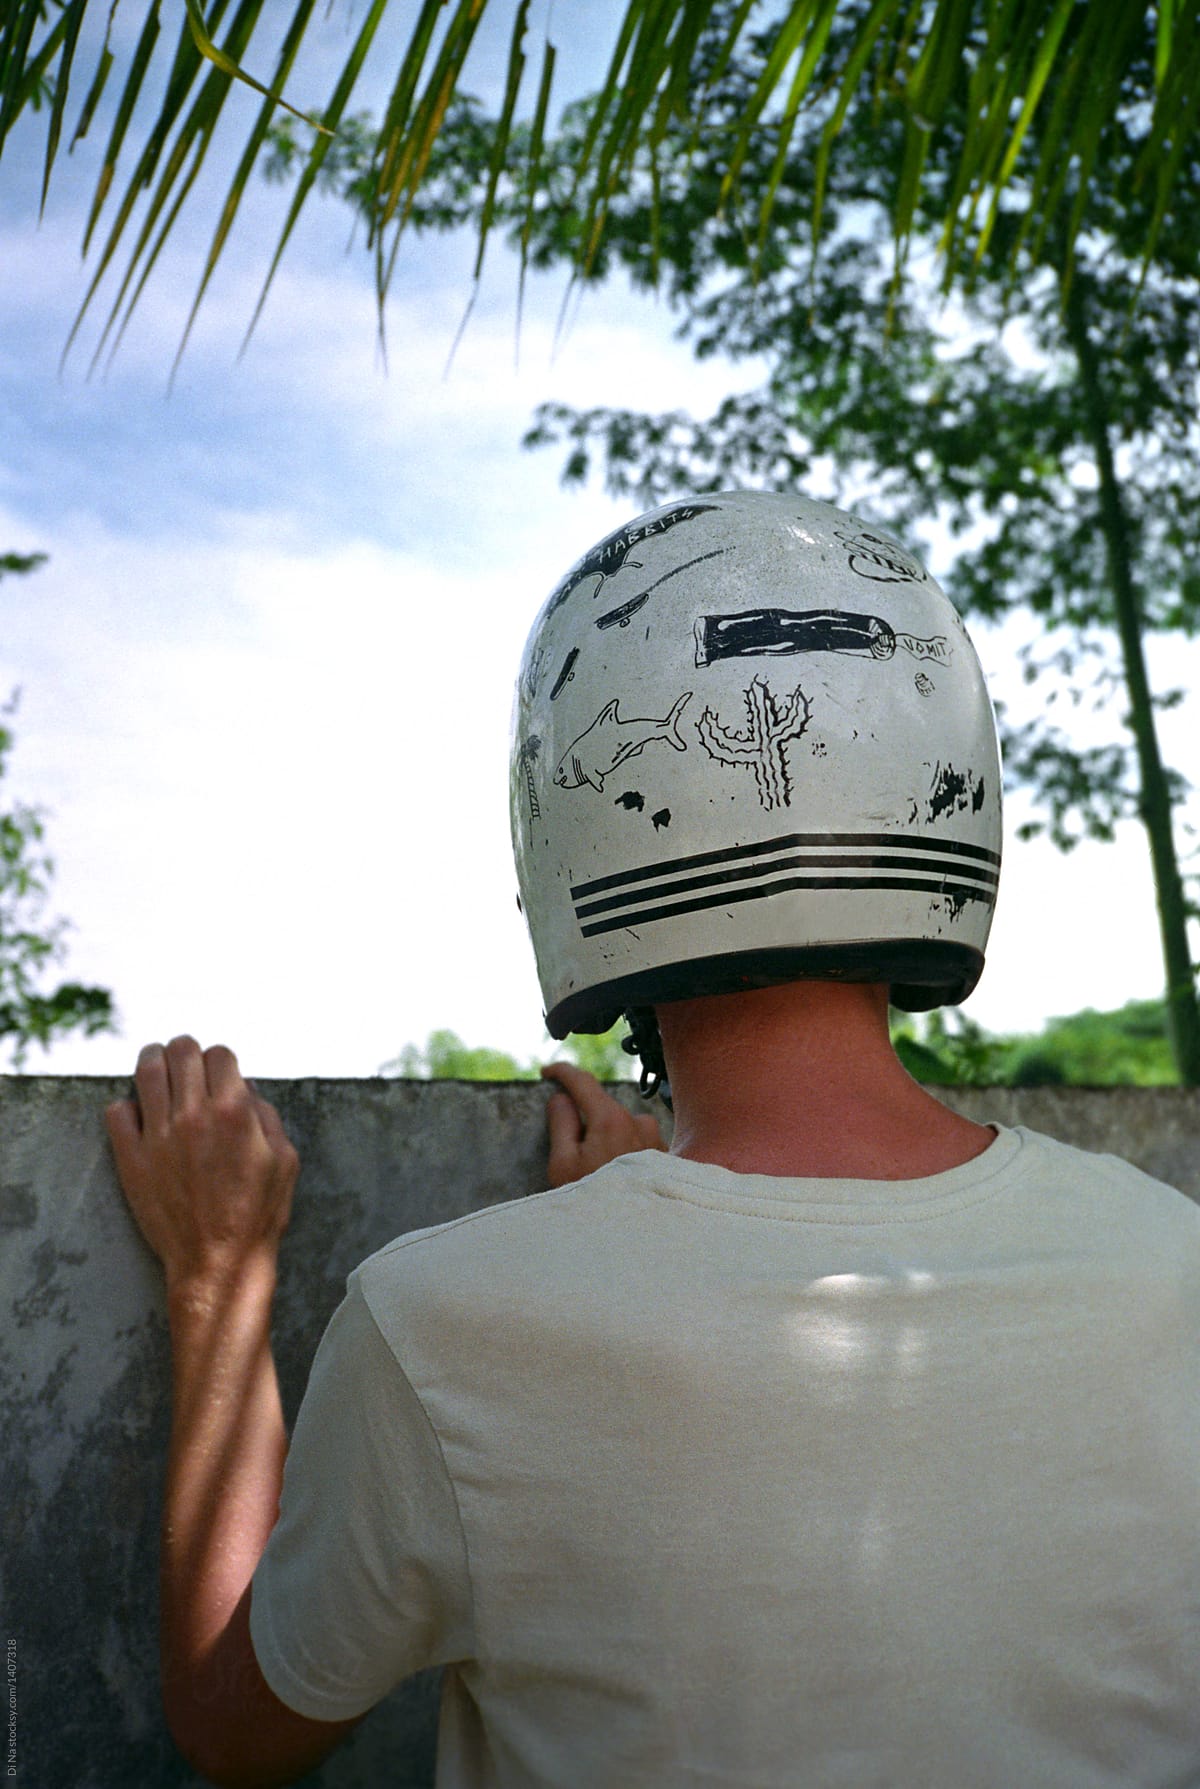 Motorbike helmet with DIY graphics